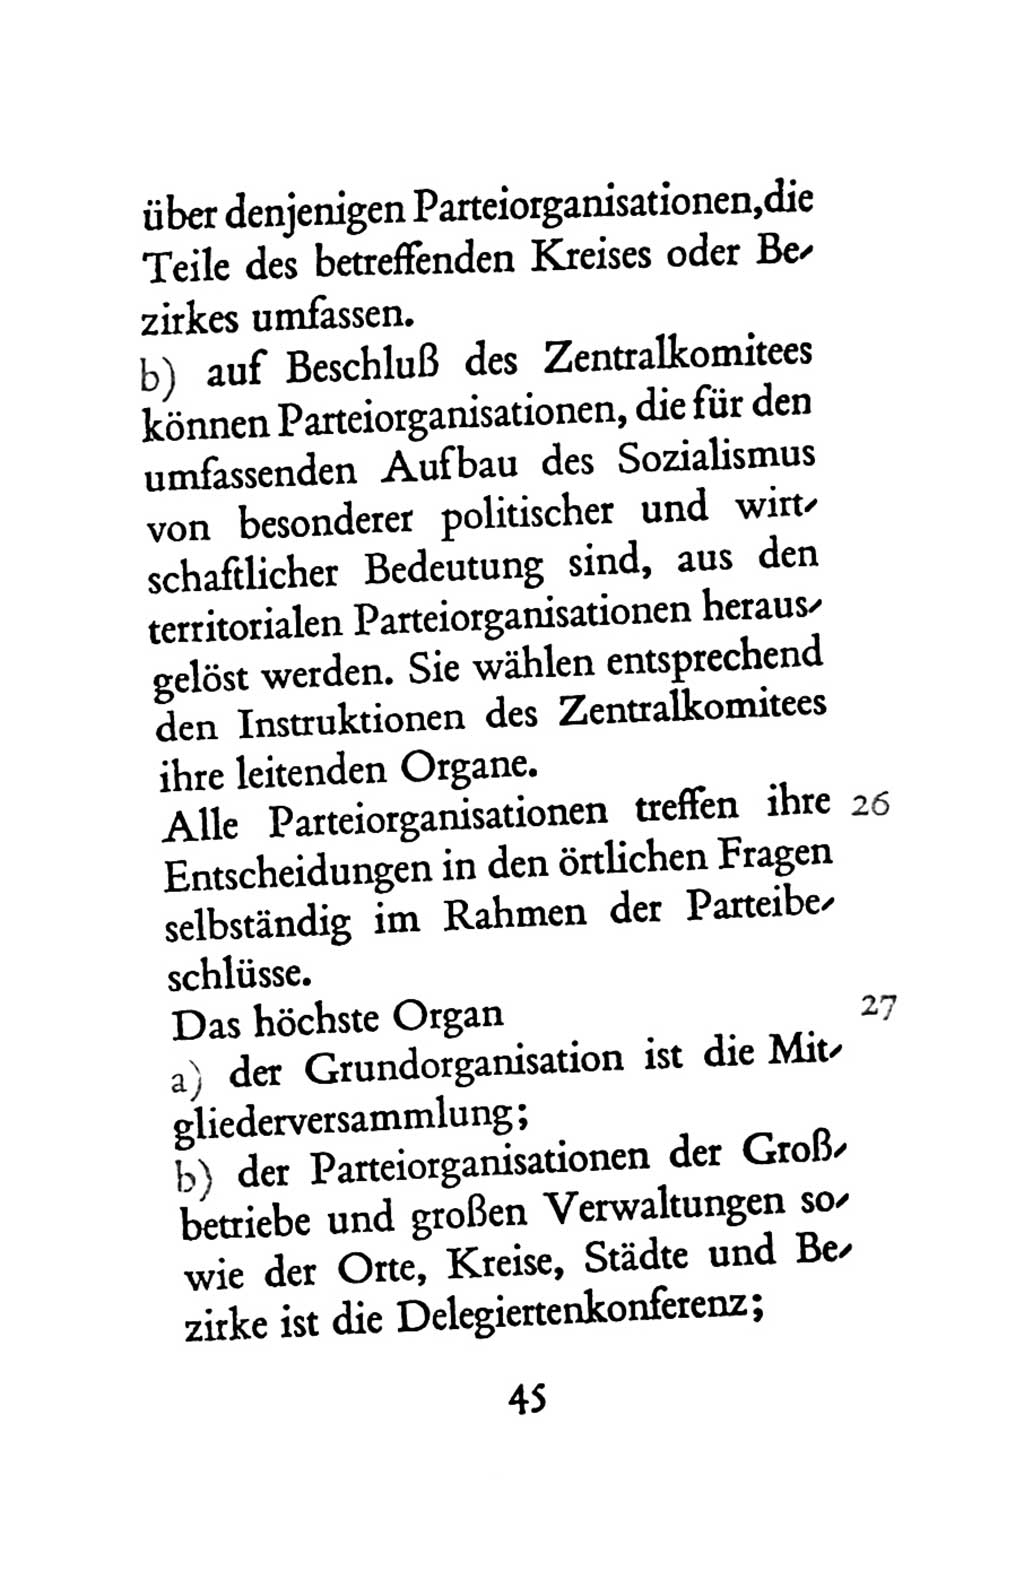 Statut der Sozialistischen Einheitspartei Deutschlands (SED) 1963, Seite 45 (St. SED DDR 1963, S. 45)